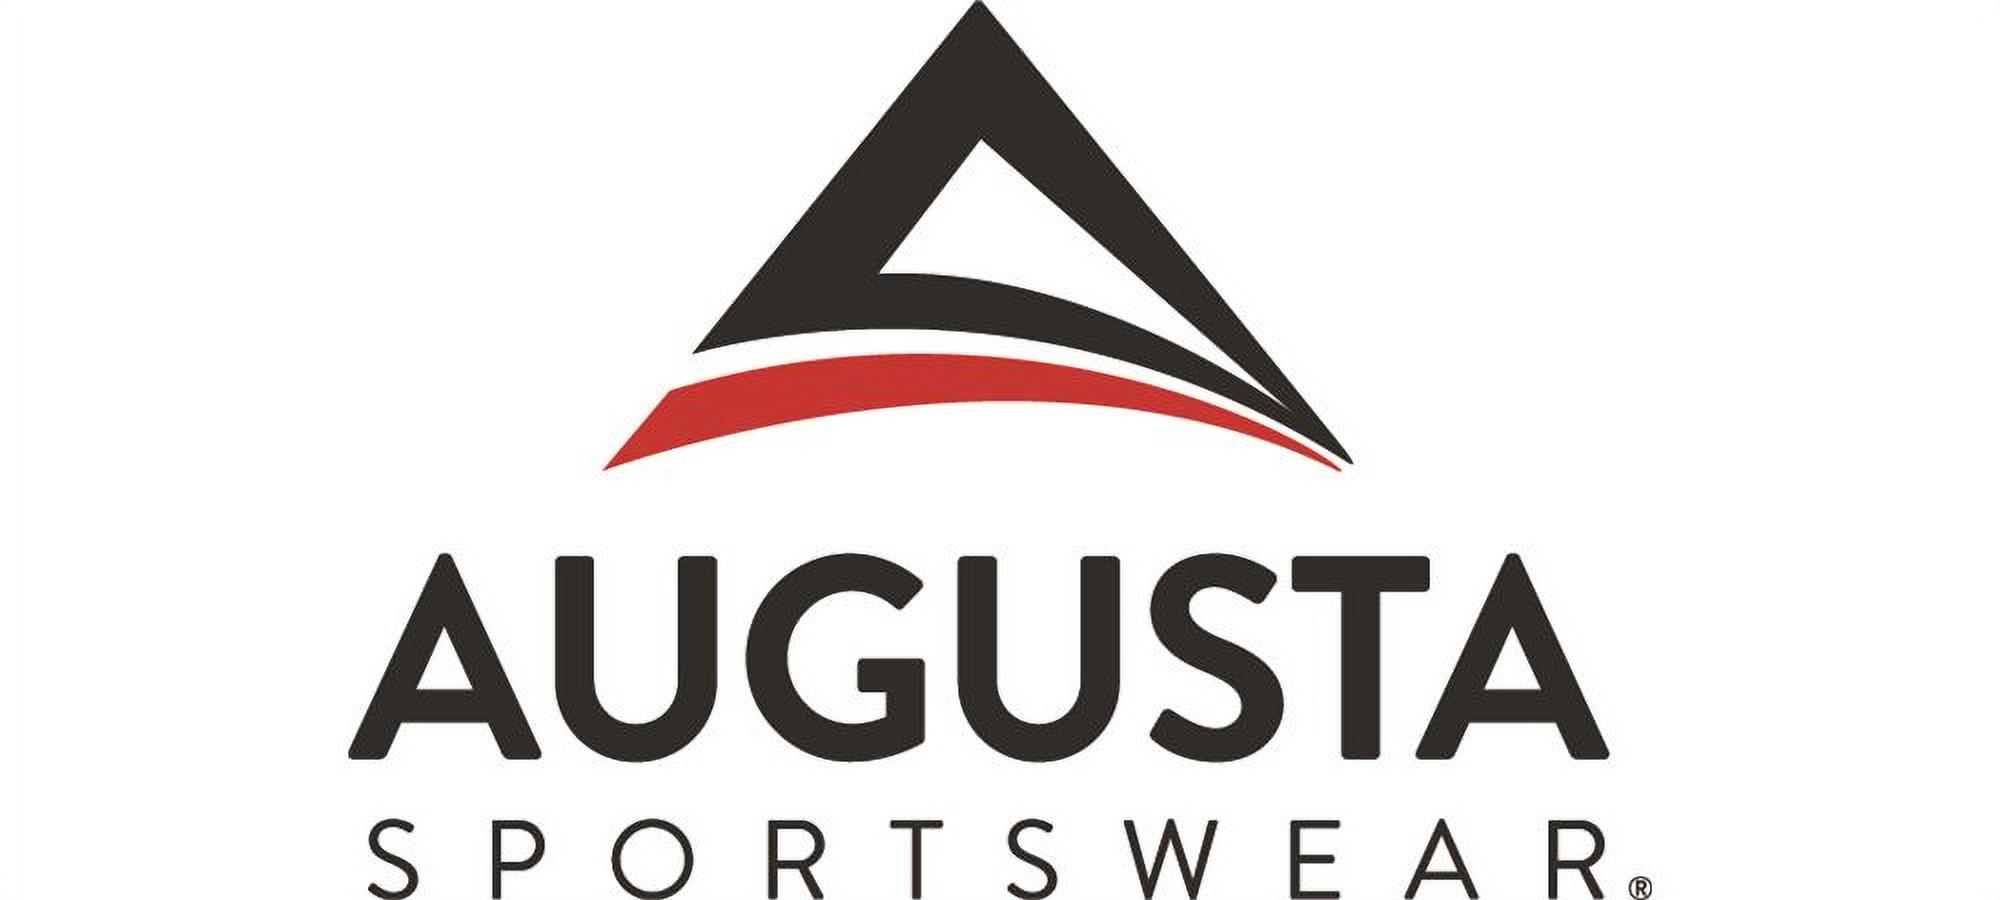 Augusta Sportswear 9561 Practice Uniform Jersey Boys Scrambler - image 2 of 2